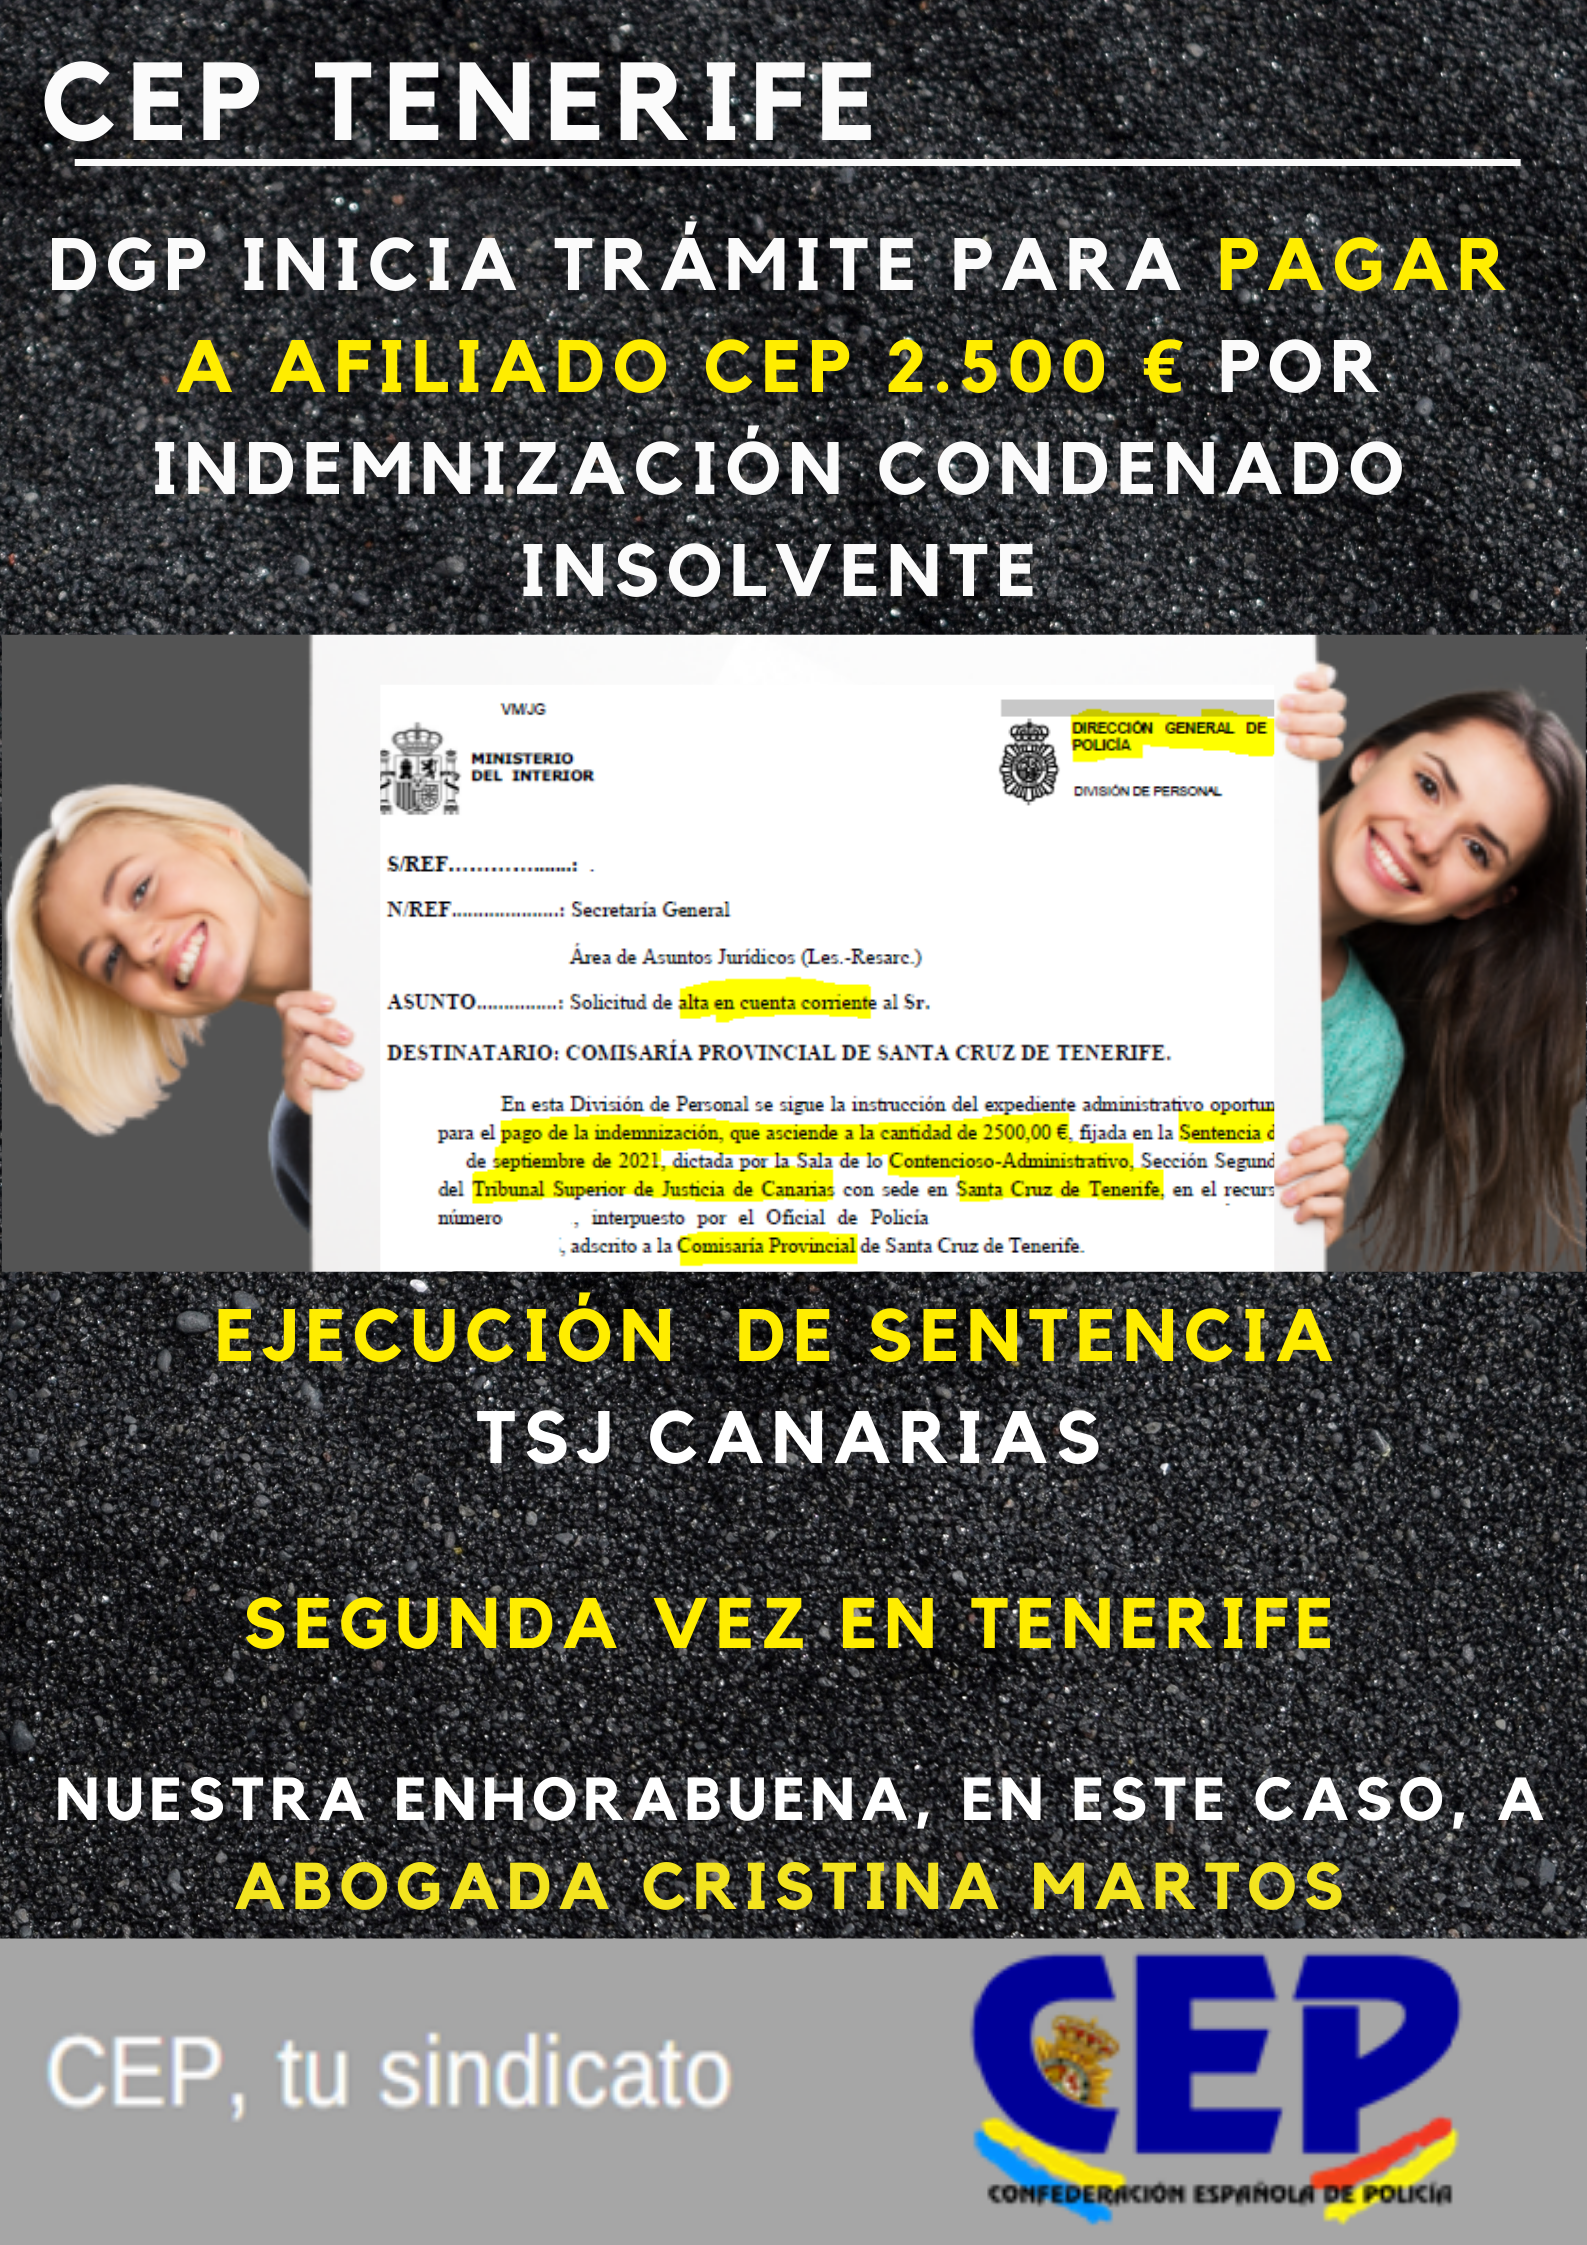 DGP inicia pago 2.500 € a afiliado CEP en ejecución sentencia TSJ Canarias por indemnización de condenado insolvente